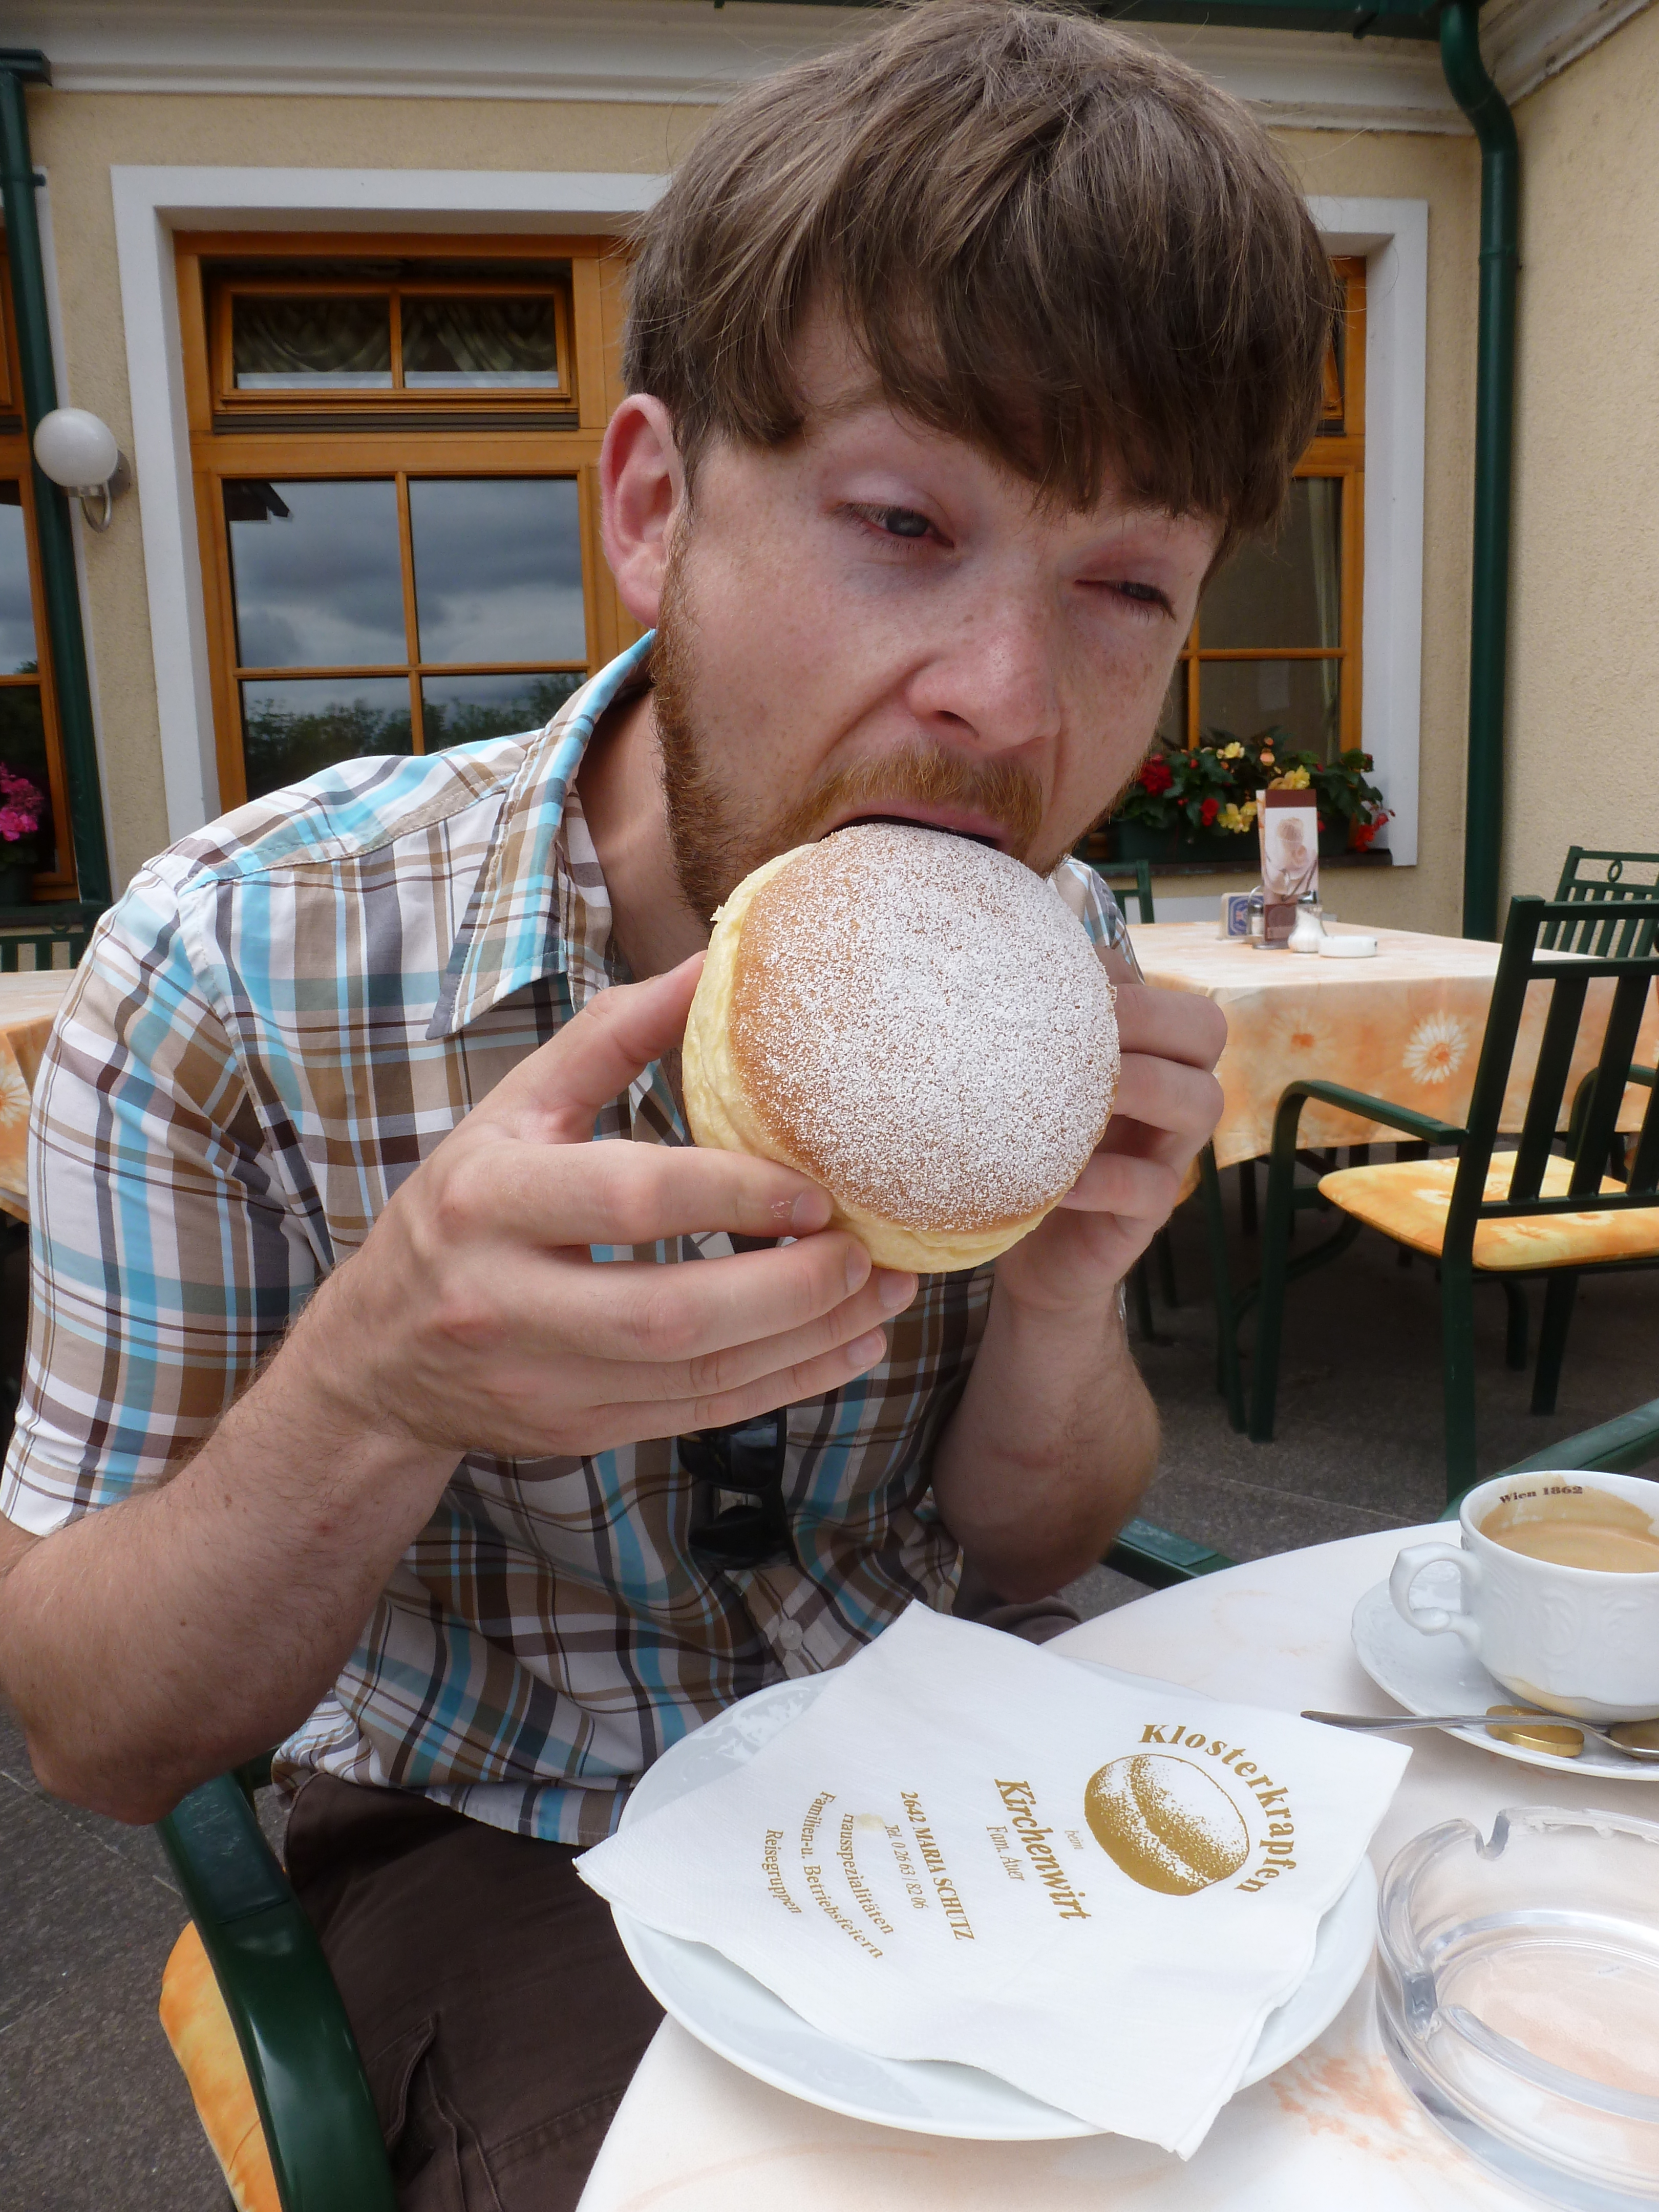 Allan wrangling a krapfen, an Austrian jelly doughnut